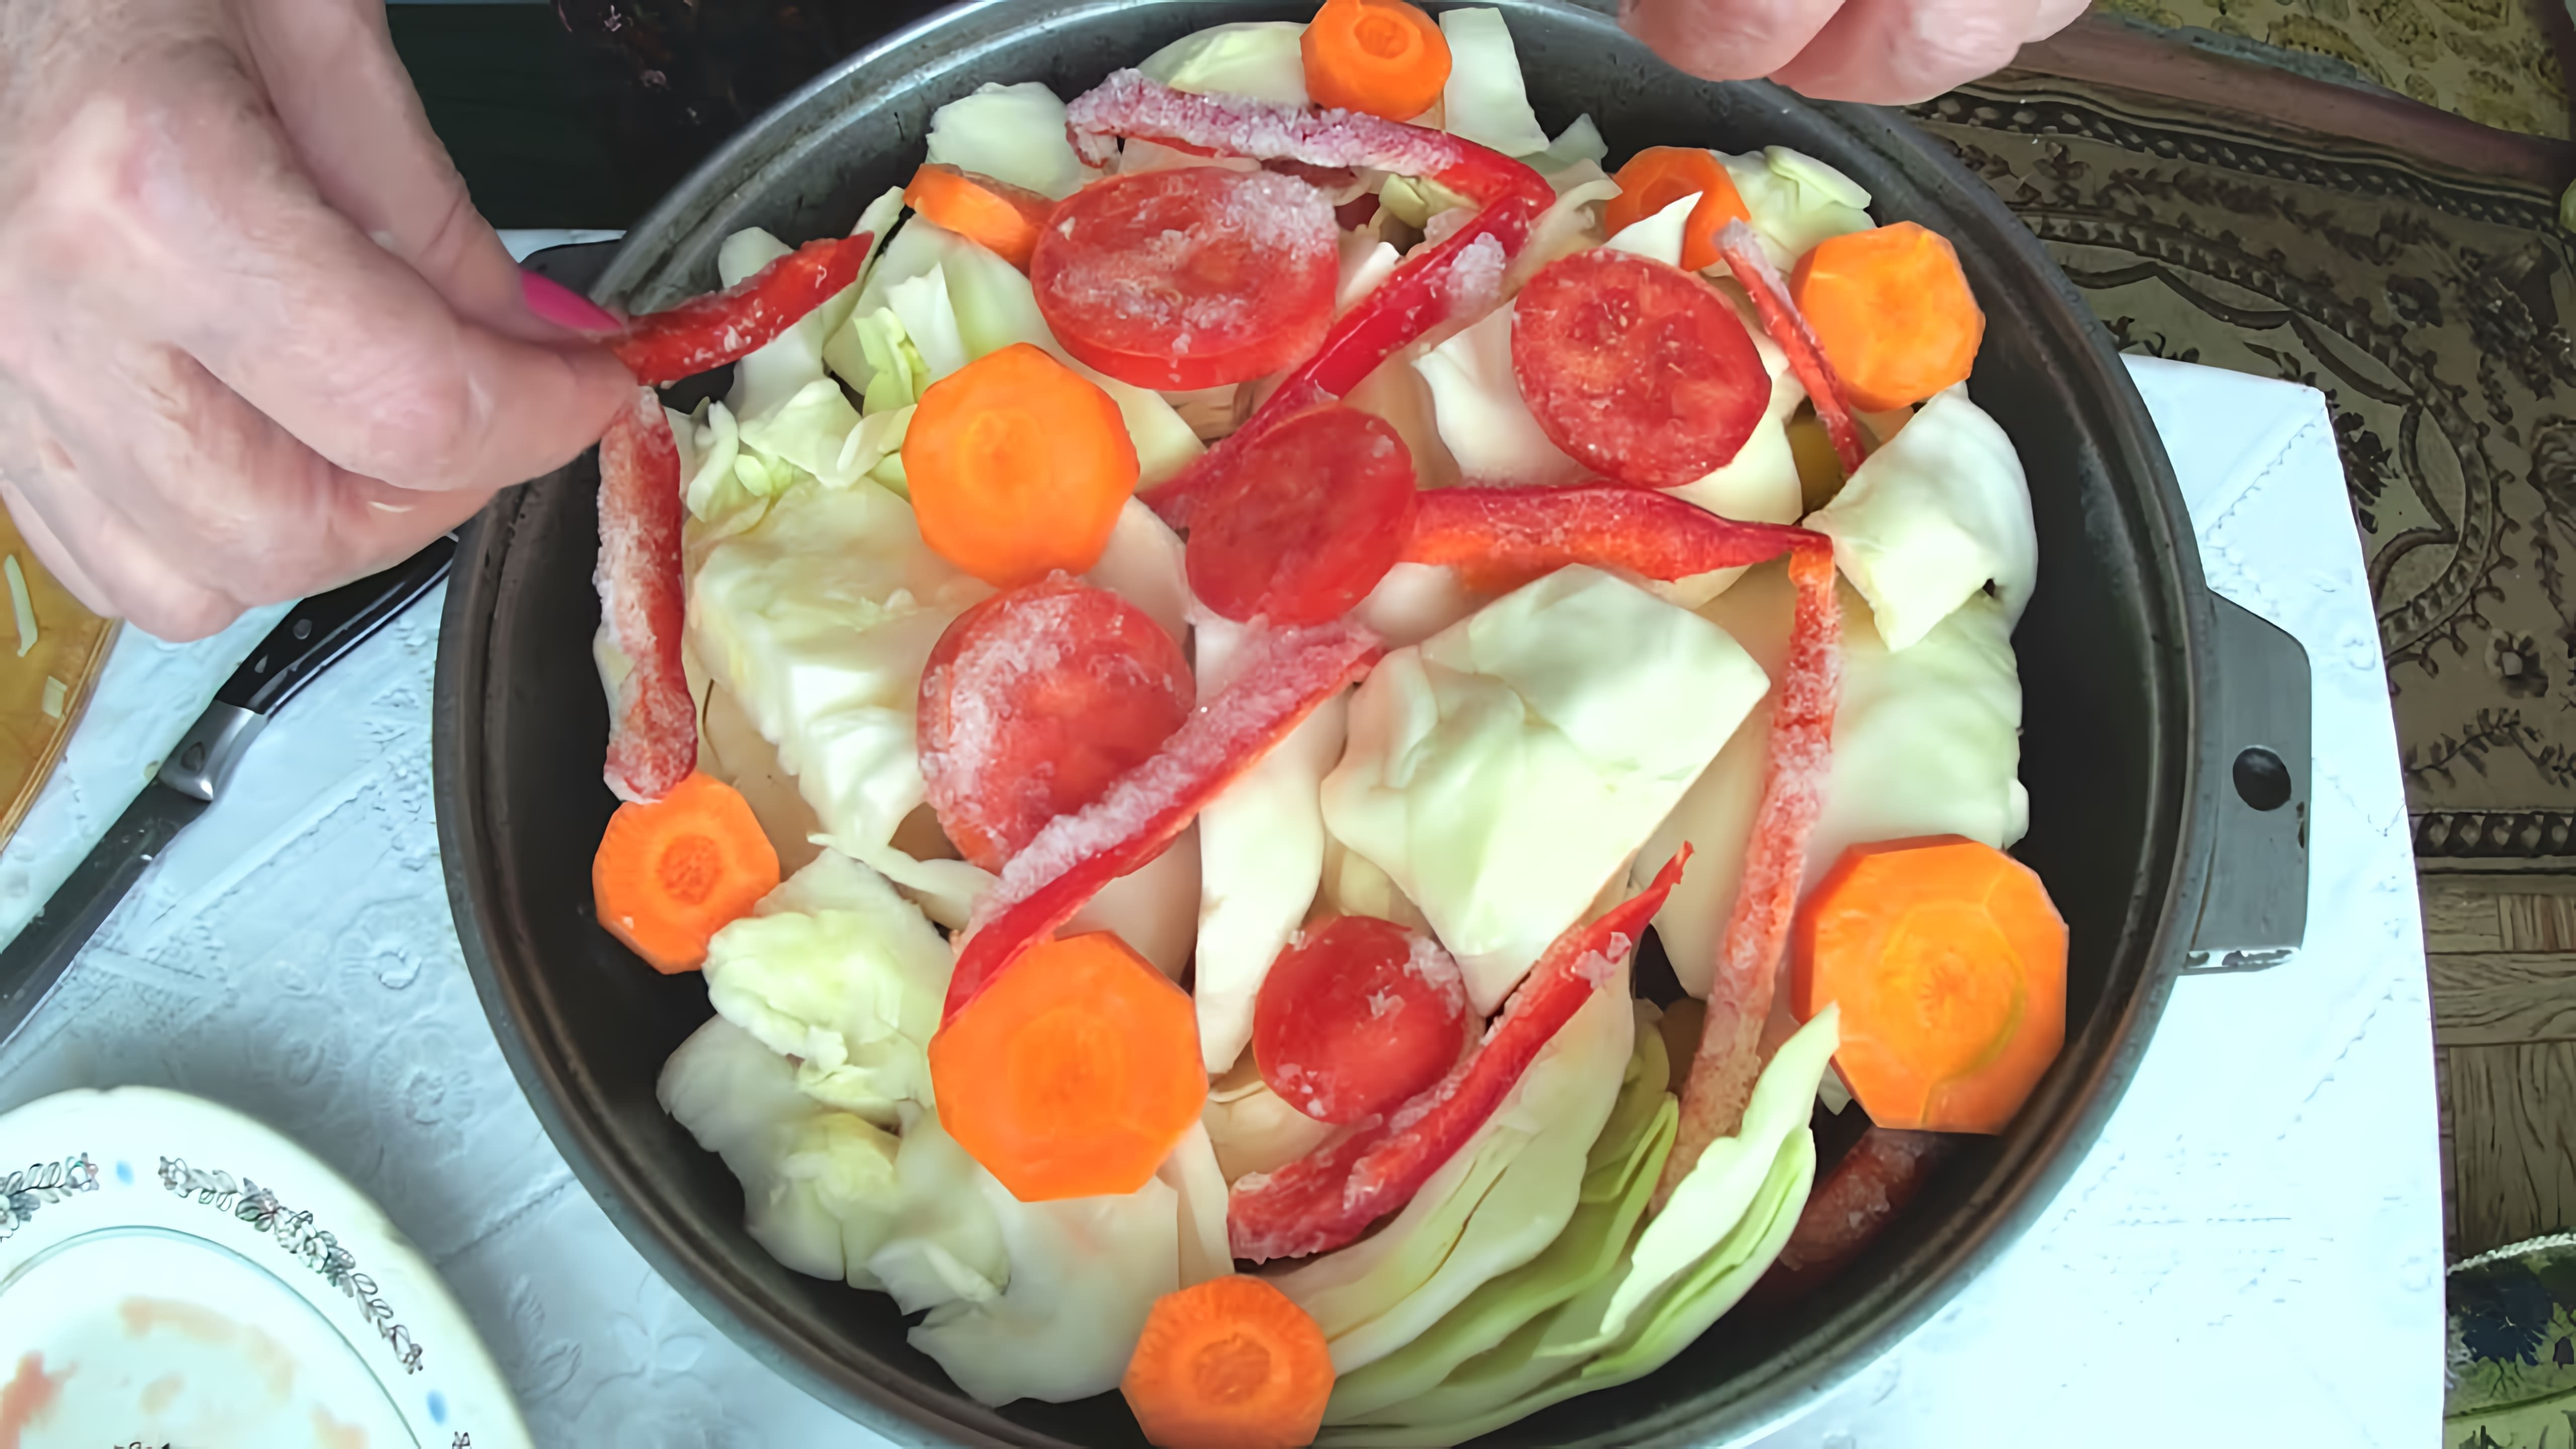 В этом видео демонстрируется процесс приготовления тушеного мяса с овощами в казане